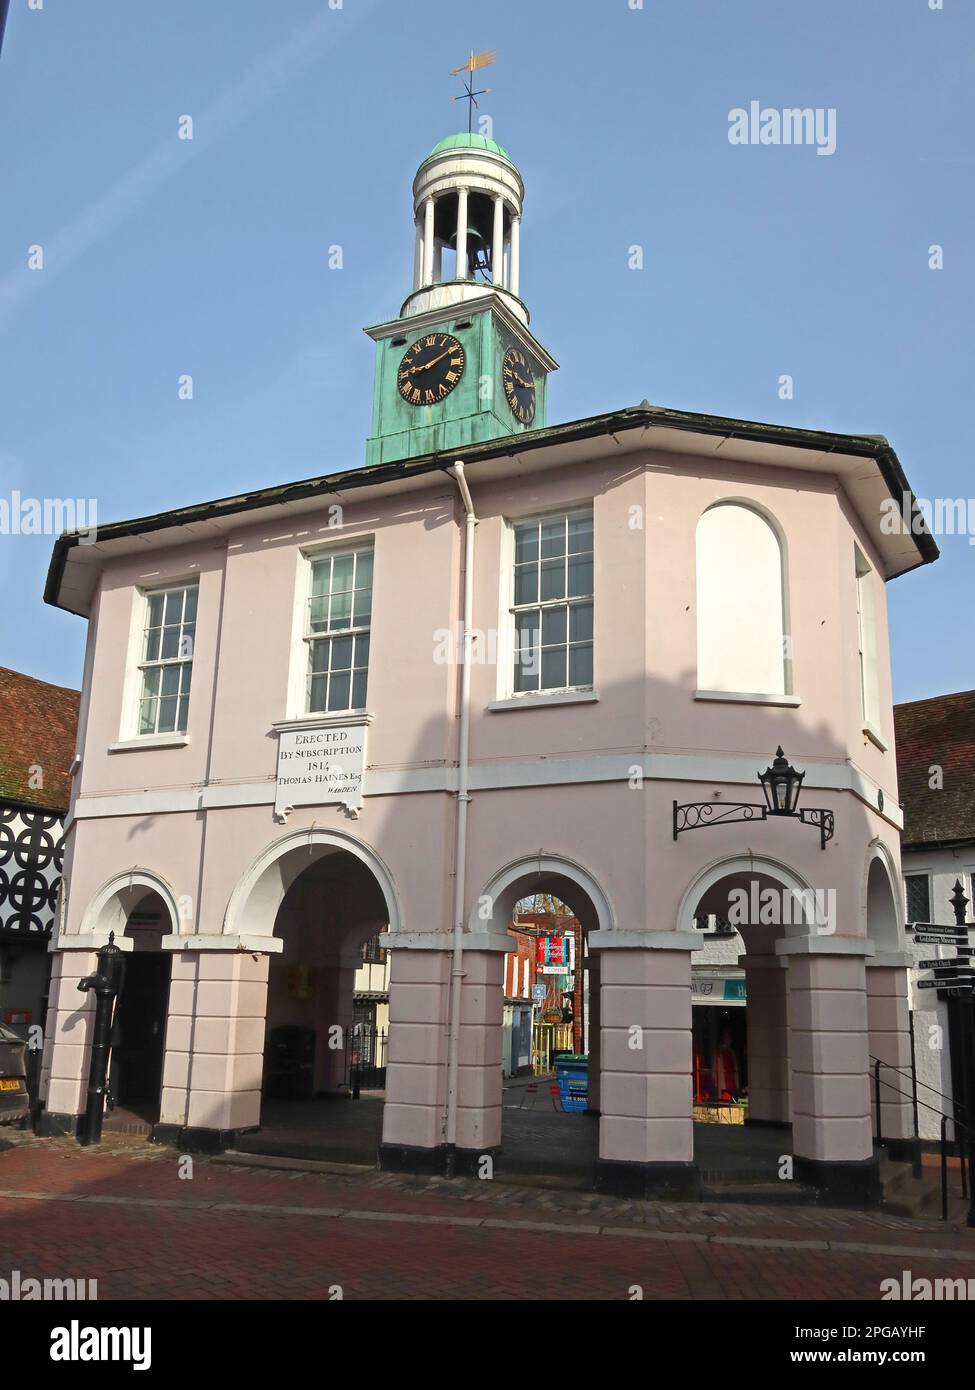 Das Pepperpot, die Uhr des Markthauses, das Rathaus, Gebäude und Architektur, High St, Godalming, Waverley, Surrey, England, Großbritannien, GU7 1AB Stockfoto